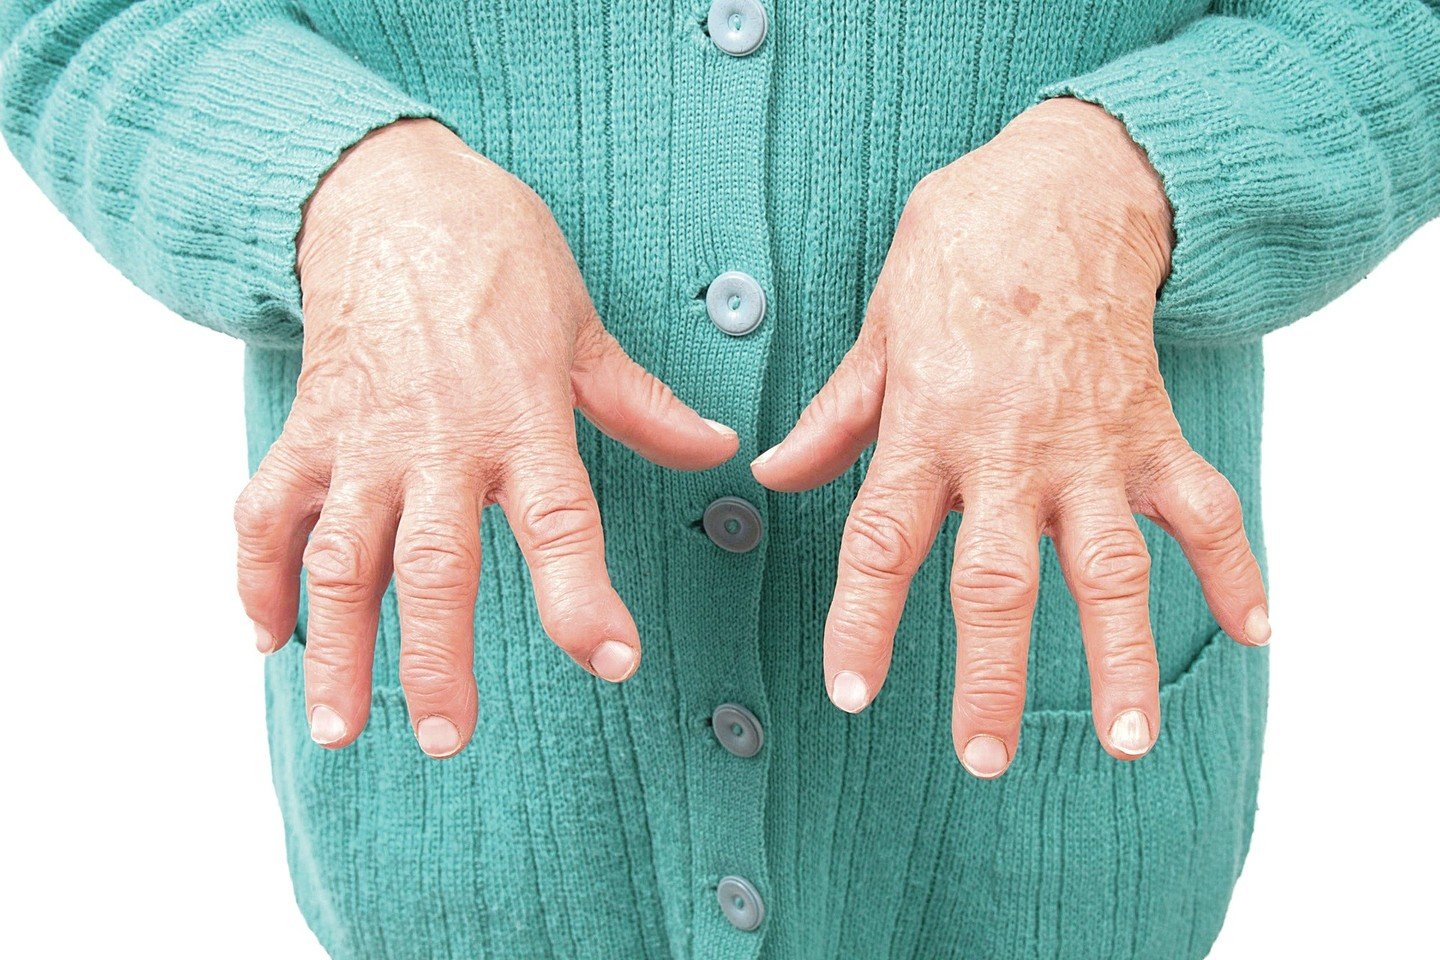 kaina kremas nuo osteochondrozės gydymas sąnarių skausmas senyviems pacientams